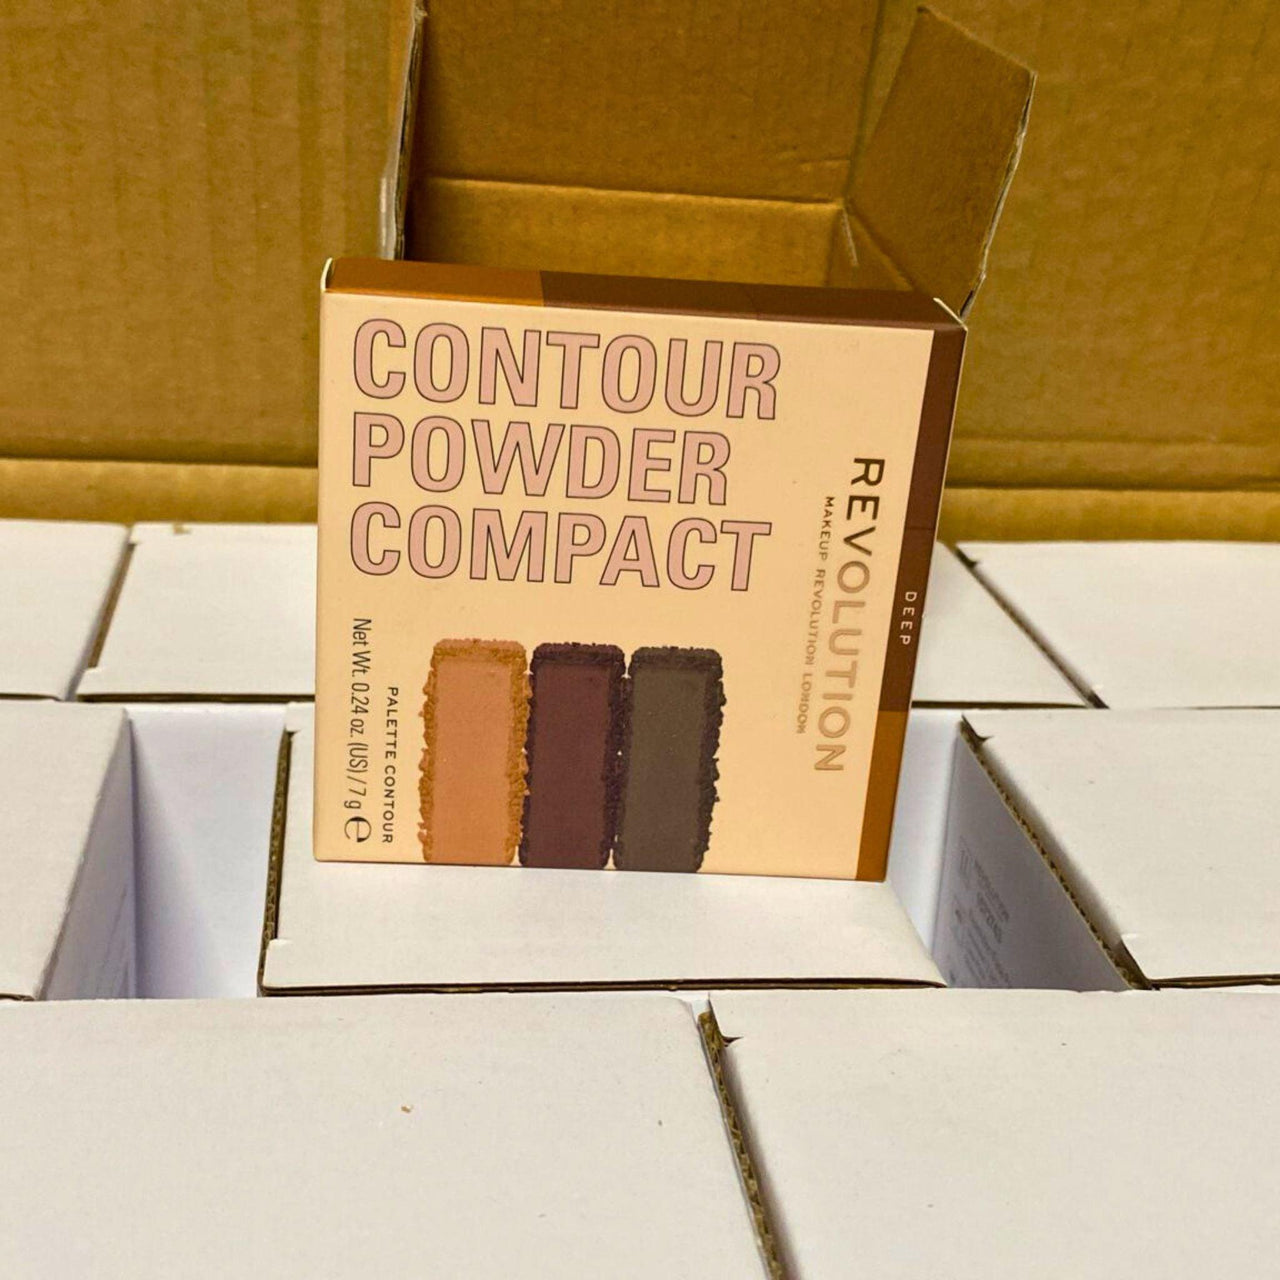 Revolution Contour Powder Compact Deep Palette Contour 0.24OZ (30 Pcs lot) - Discount Wholesalers Inc